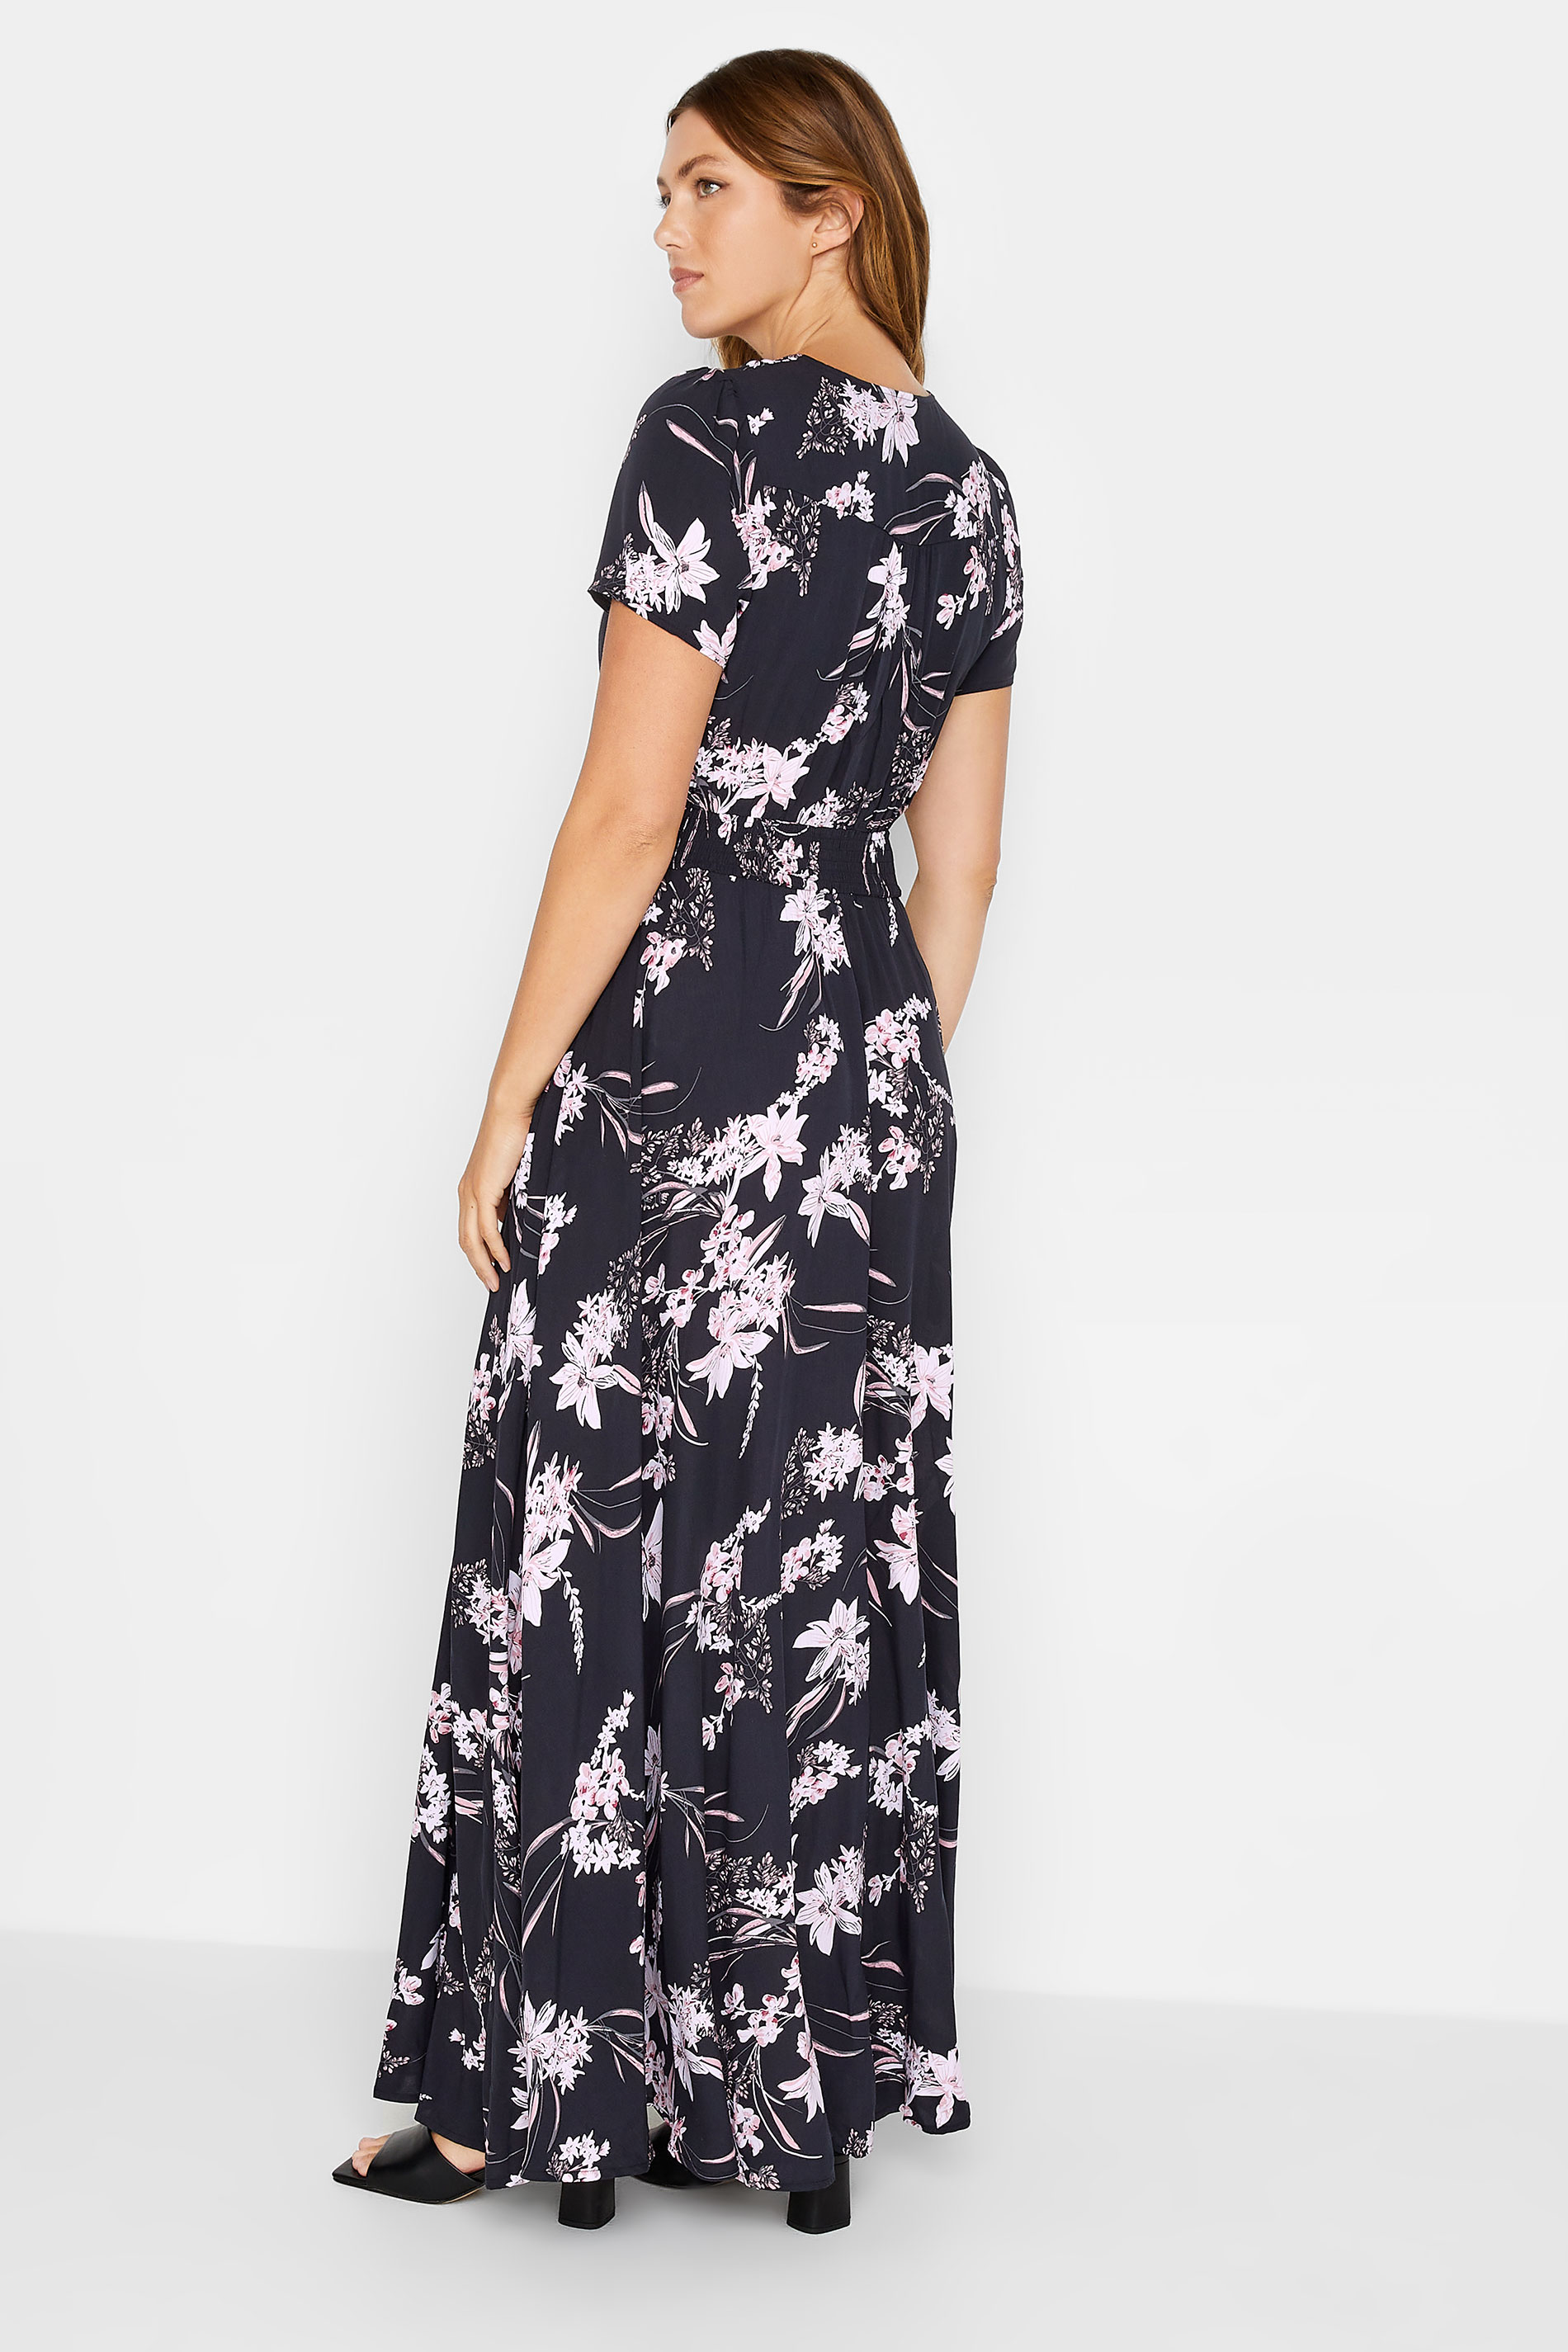 LTS Tall Women's Navy Blue Floral Print Shirred Waist Maxi Dress | Long Tall Sally 3